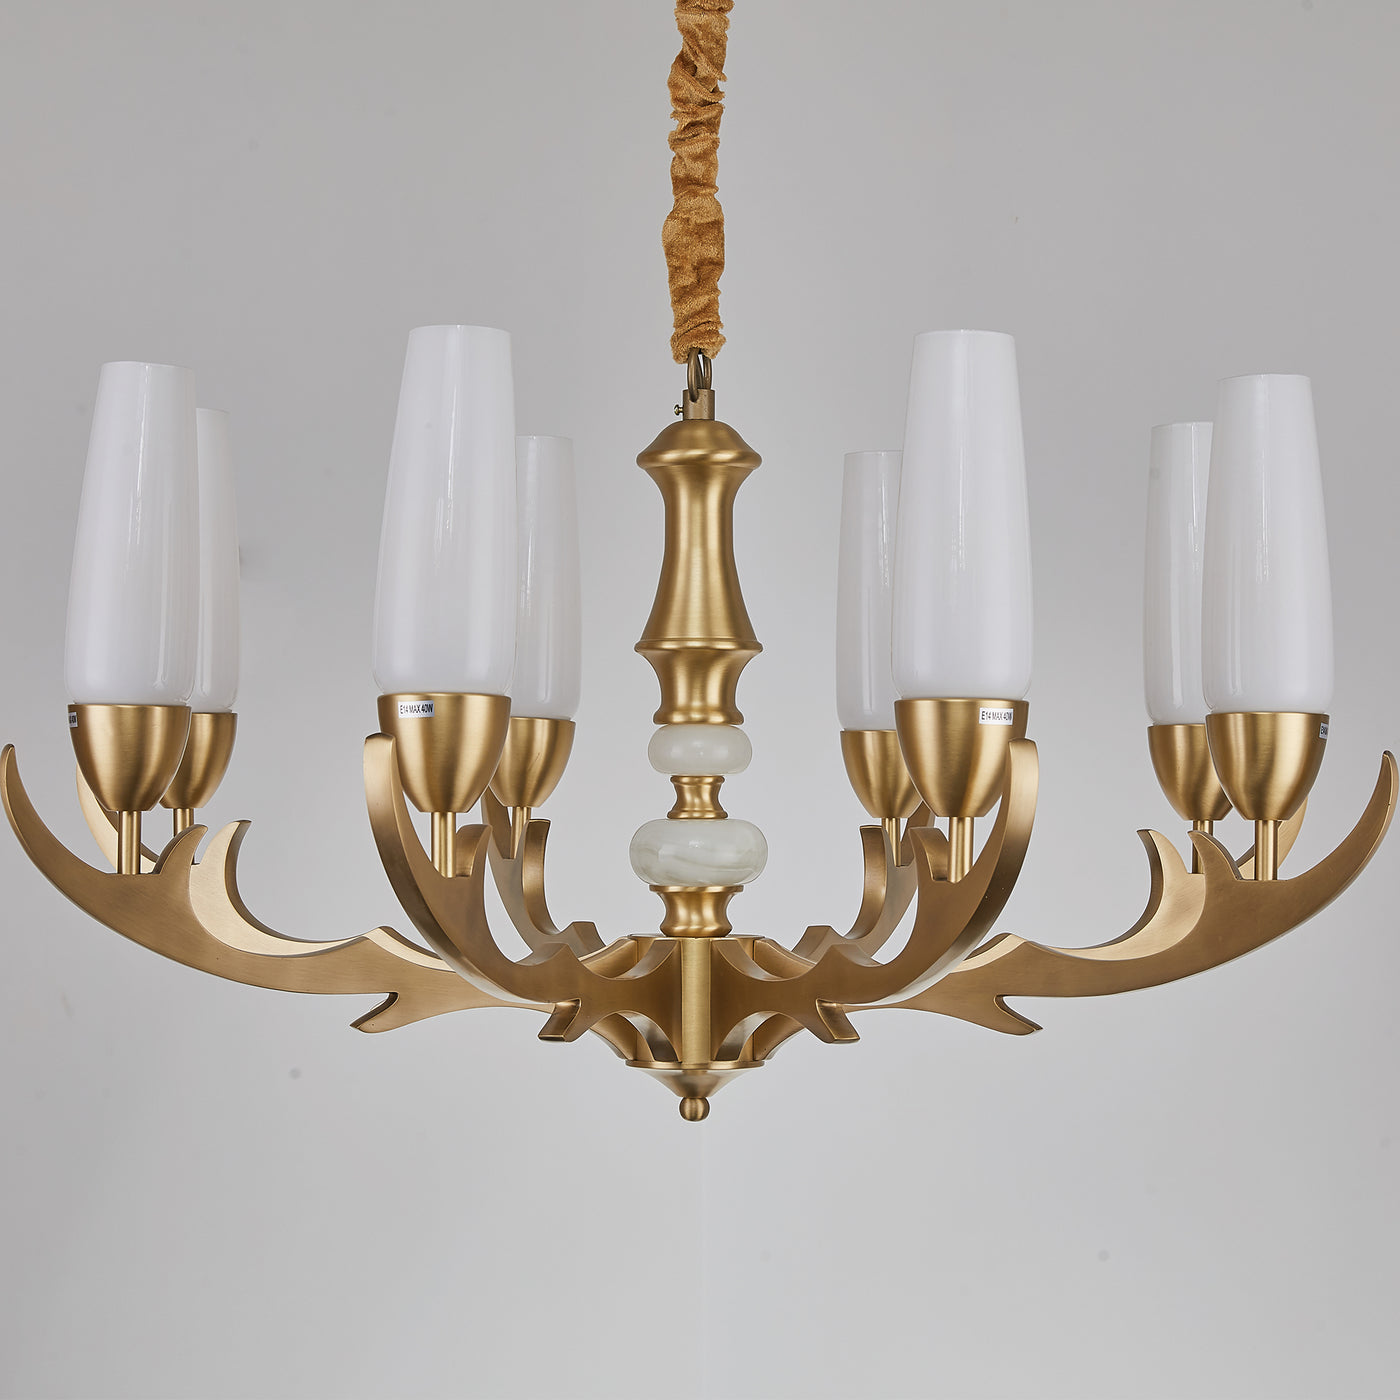 Creative golden chandelier